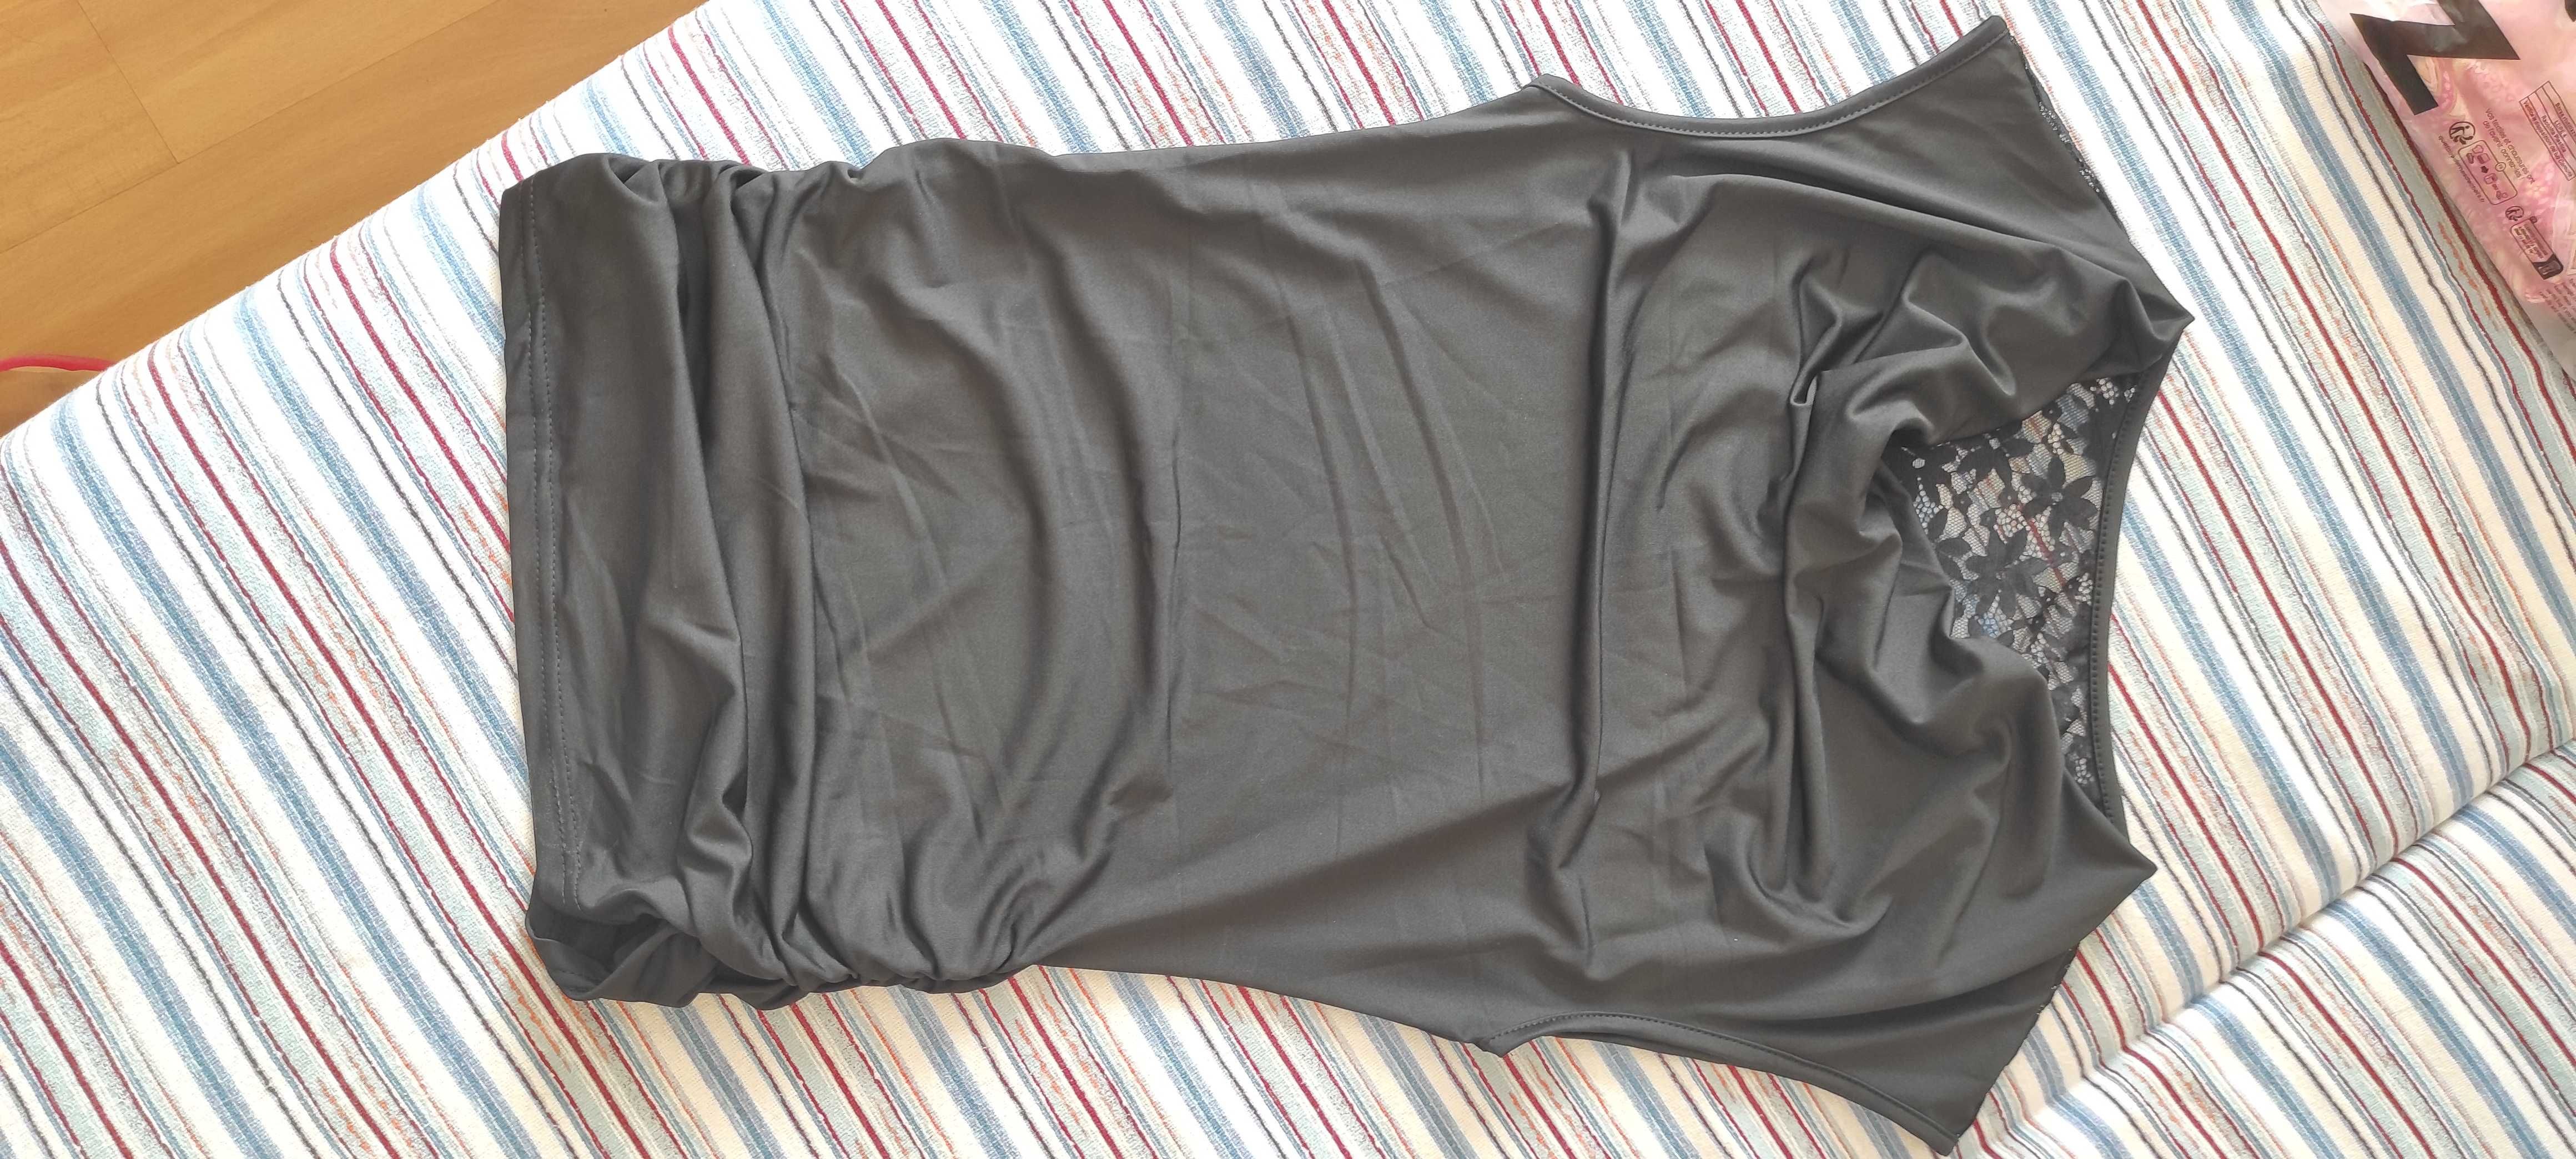 Дамска черна блуза, дантела на гърба,  XS - размер